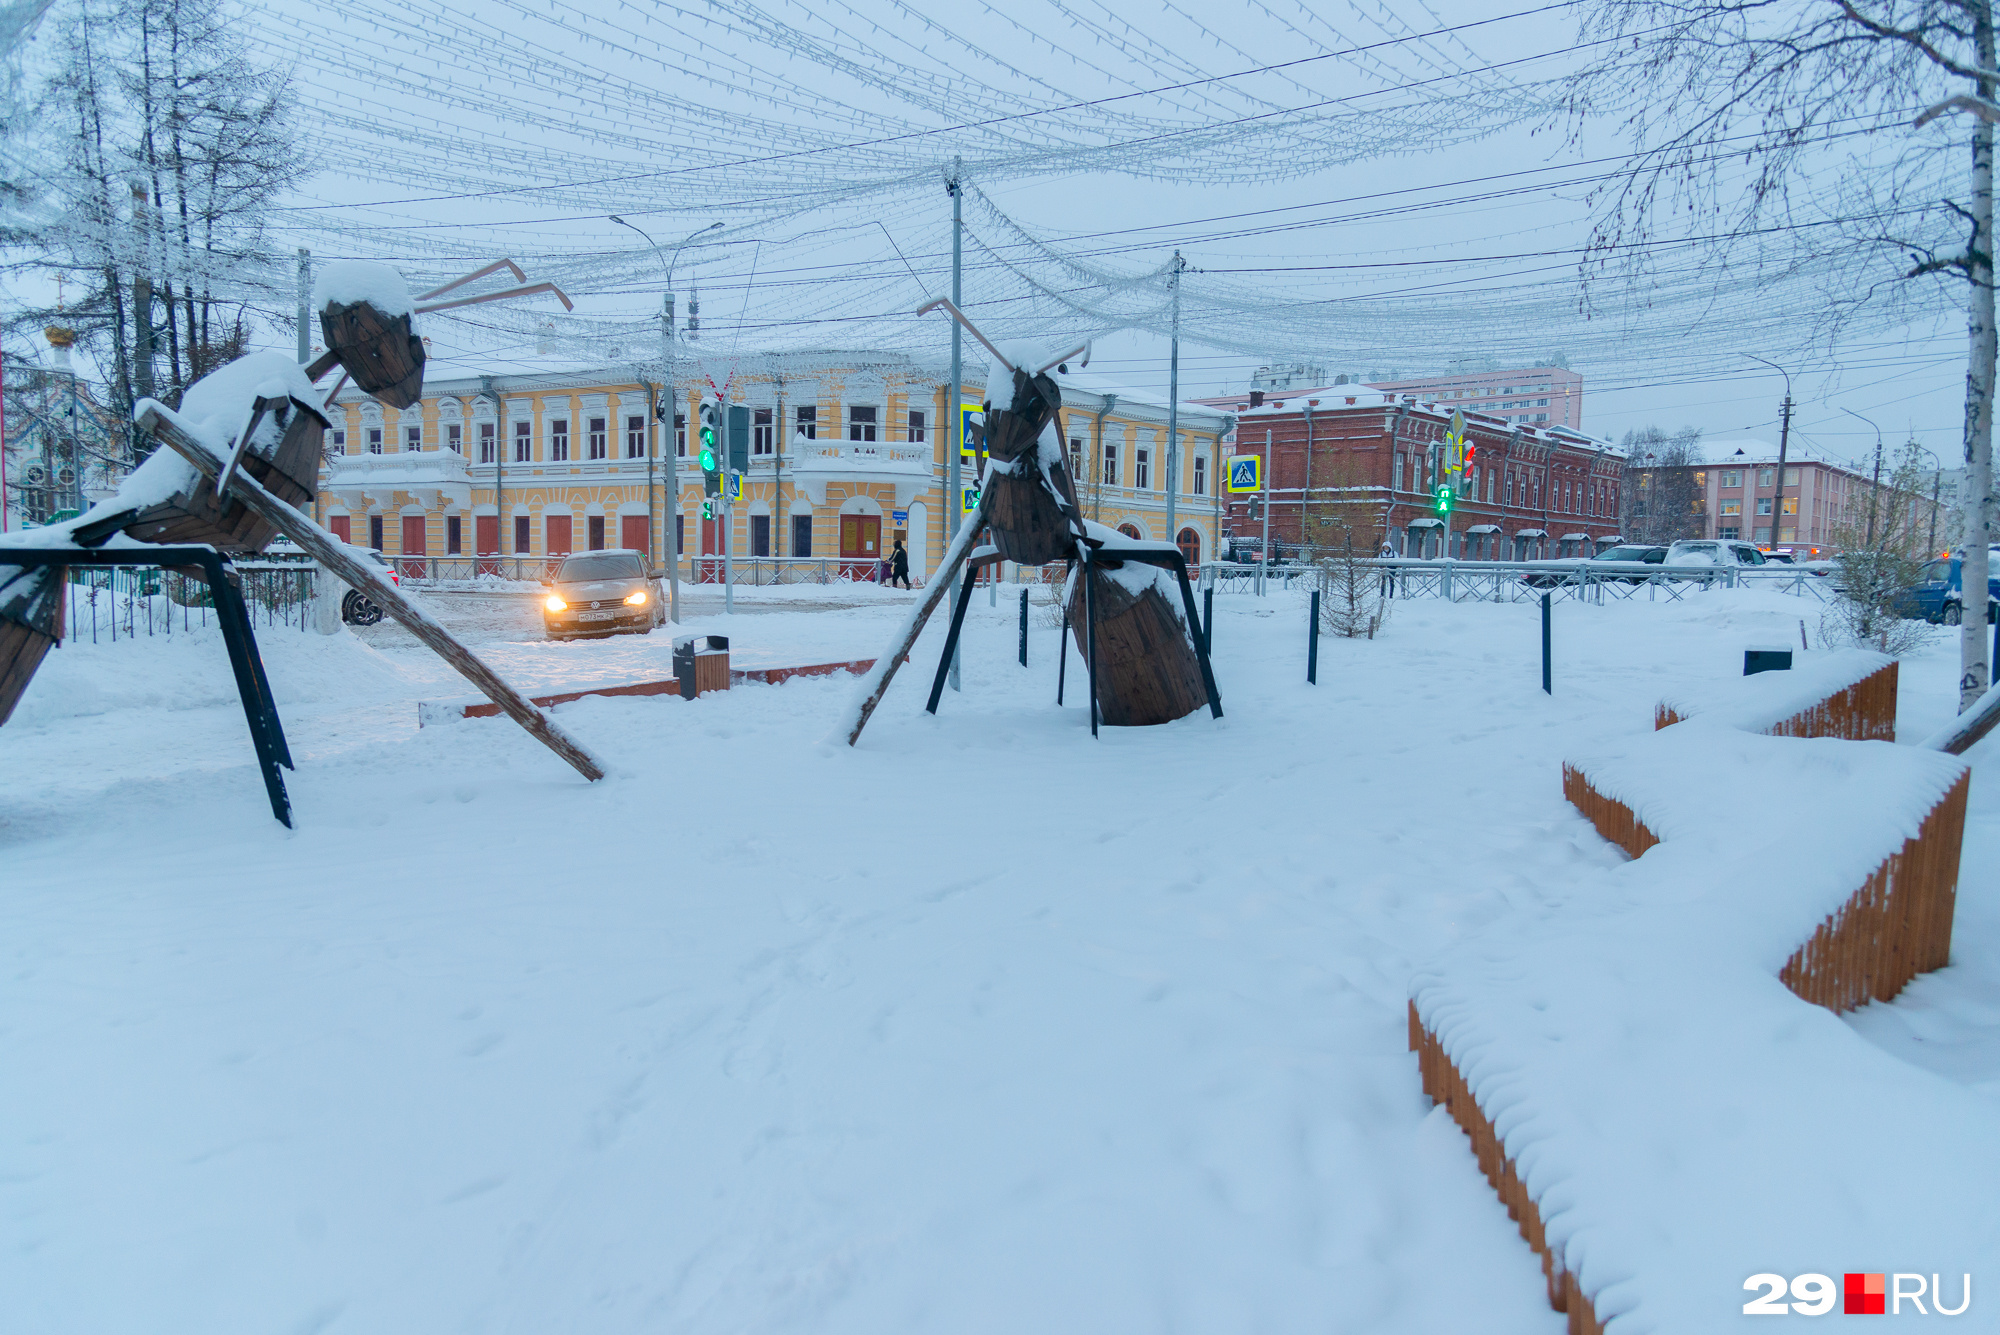 Молодежный сквер — одно из самых заметных мест в Архангельске. Мы следили за тем, <a href="https://29.ru/text/gorod/2020/11/11/69537913/" class="_" target="_blank">как преображалась эта территория</a>